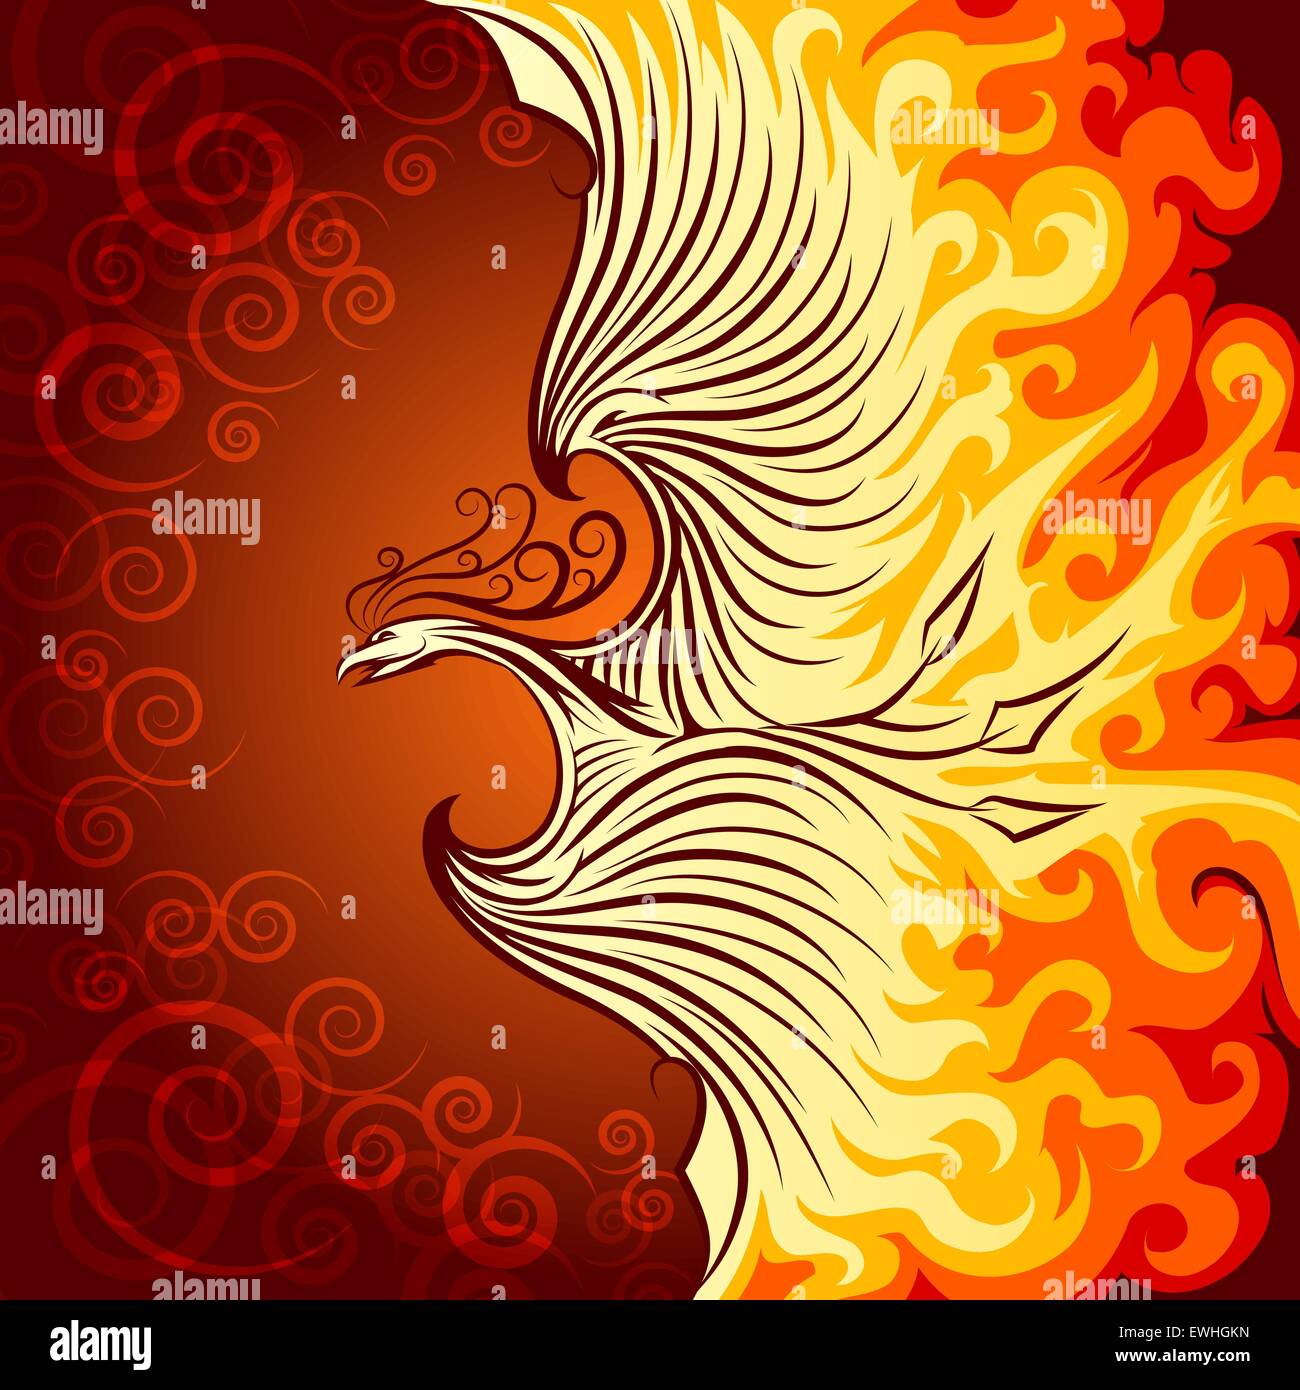 Illustrazione decorativo di flying Phoenix Bird. Phoenix nella fiamma di fuoco. Illustrazione Vettoriale